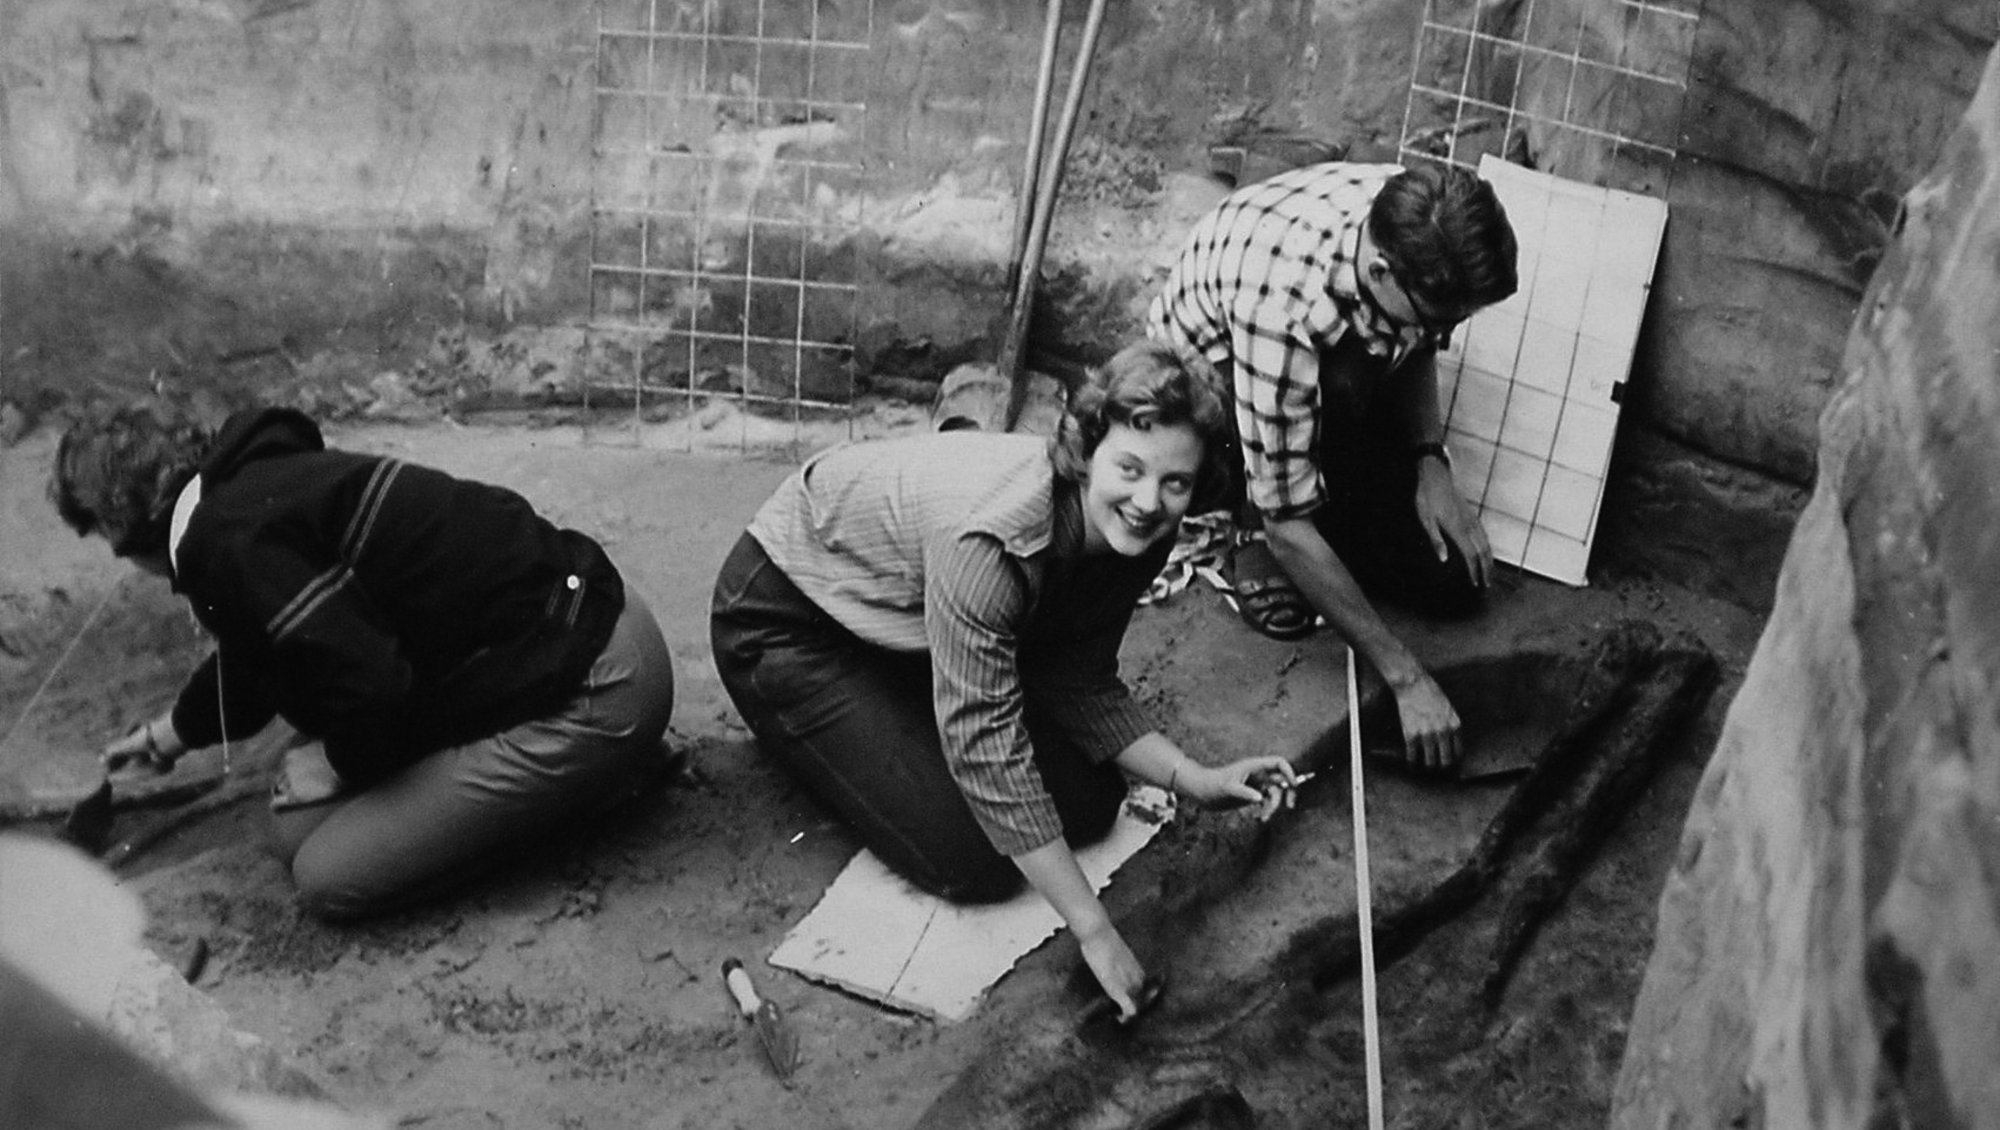 Prinsesse Margrethe sidder i en udgravning sammen med 2 andre personer og kigger op, mens de 2 andre kigger ned og er i gang med at udgrave.